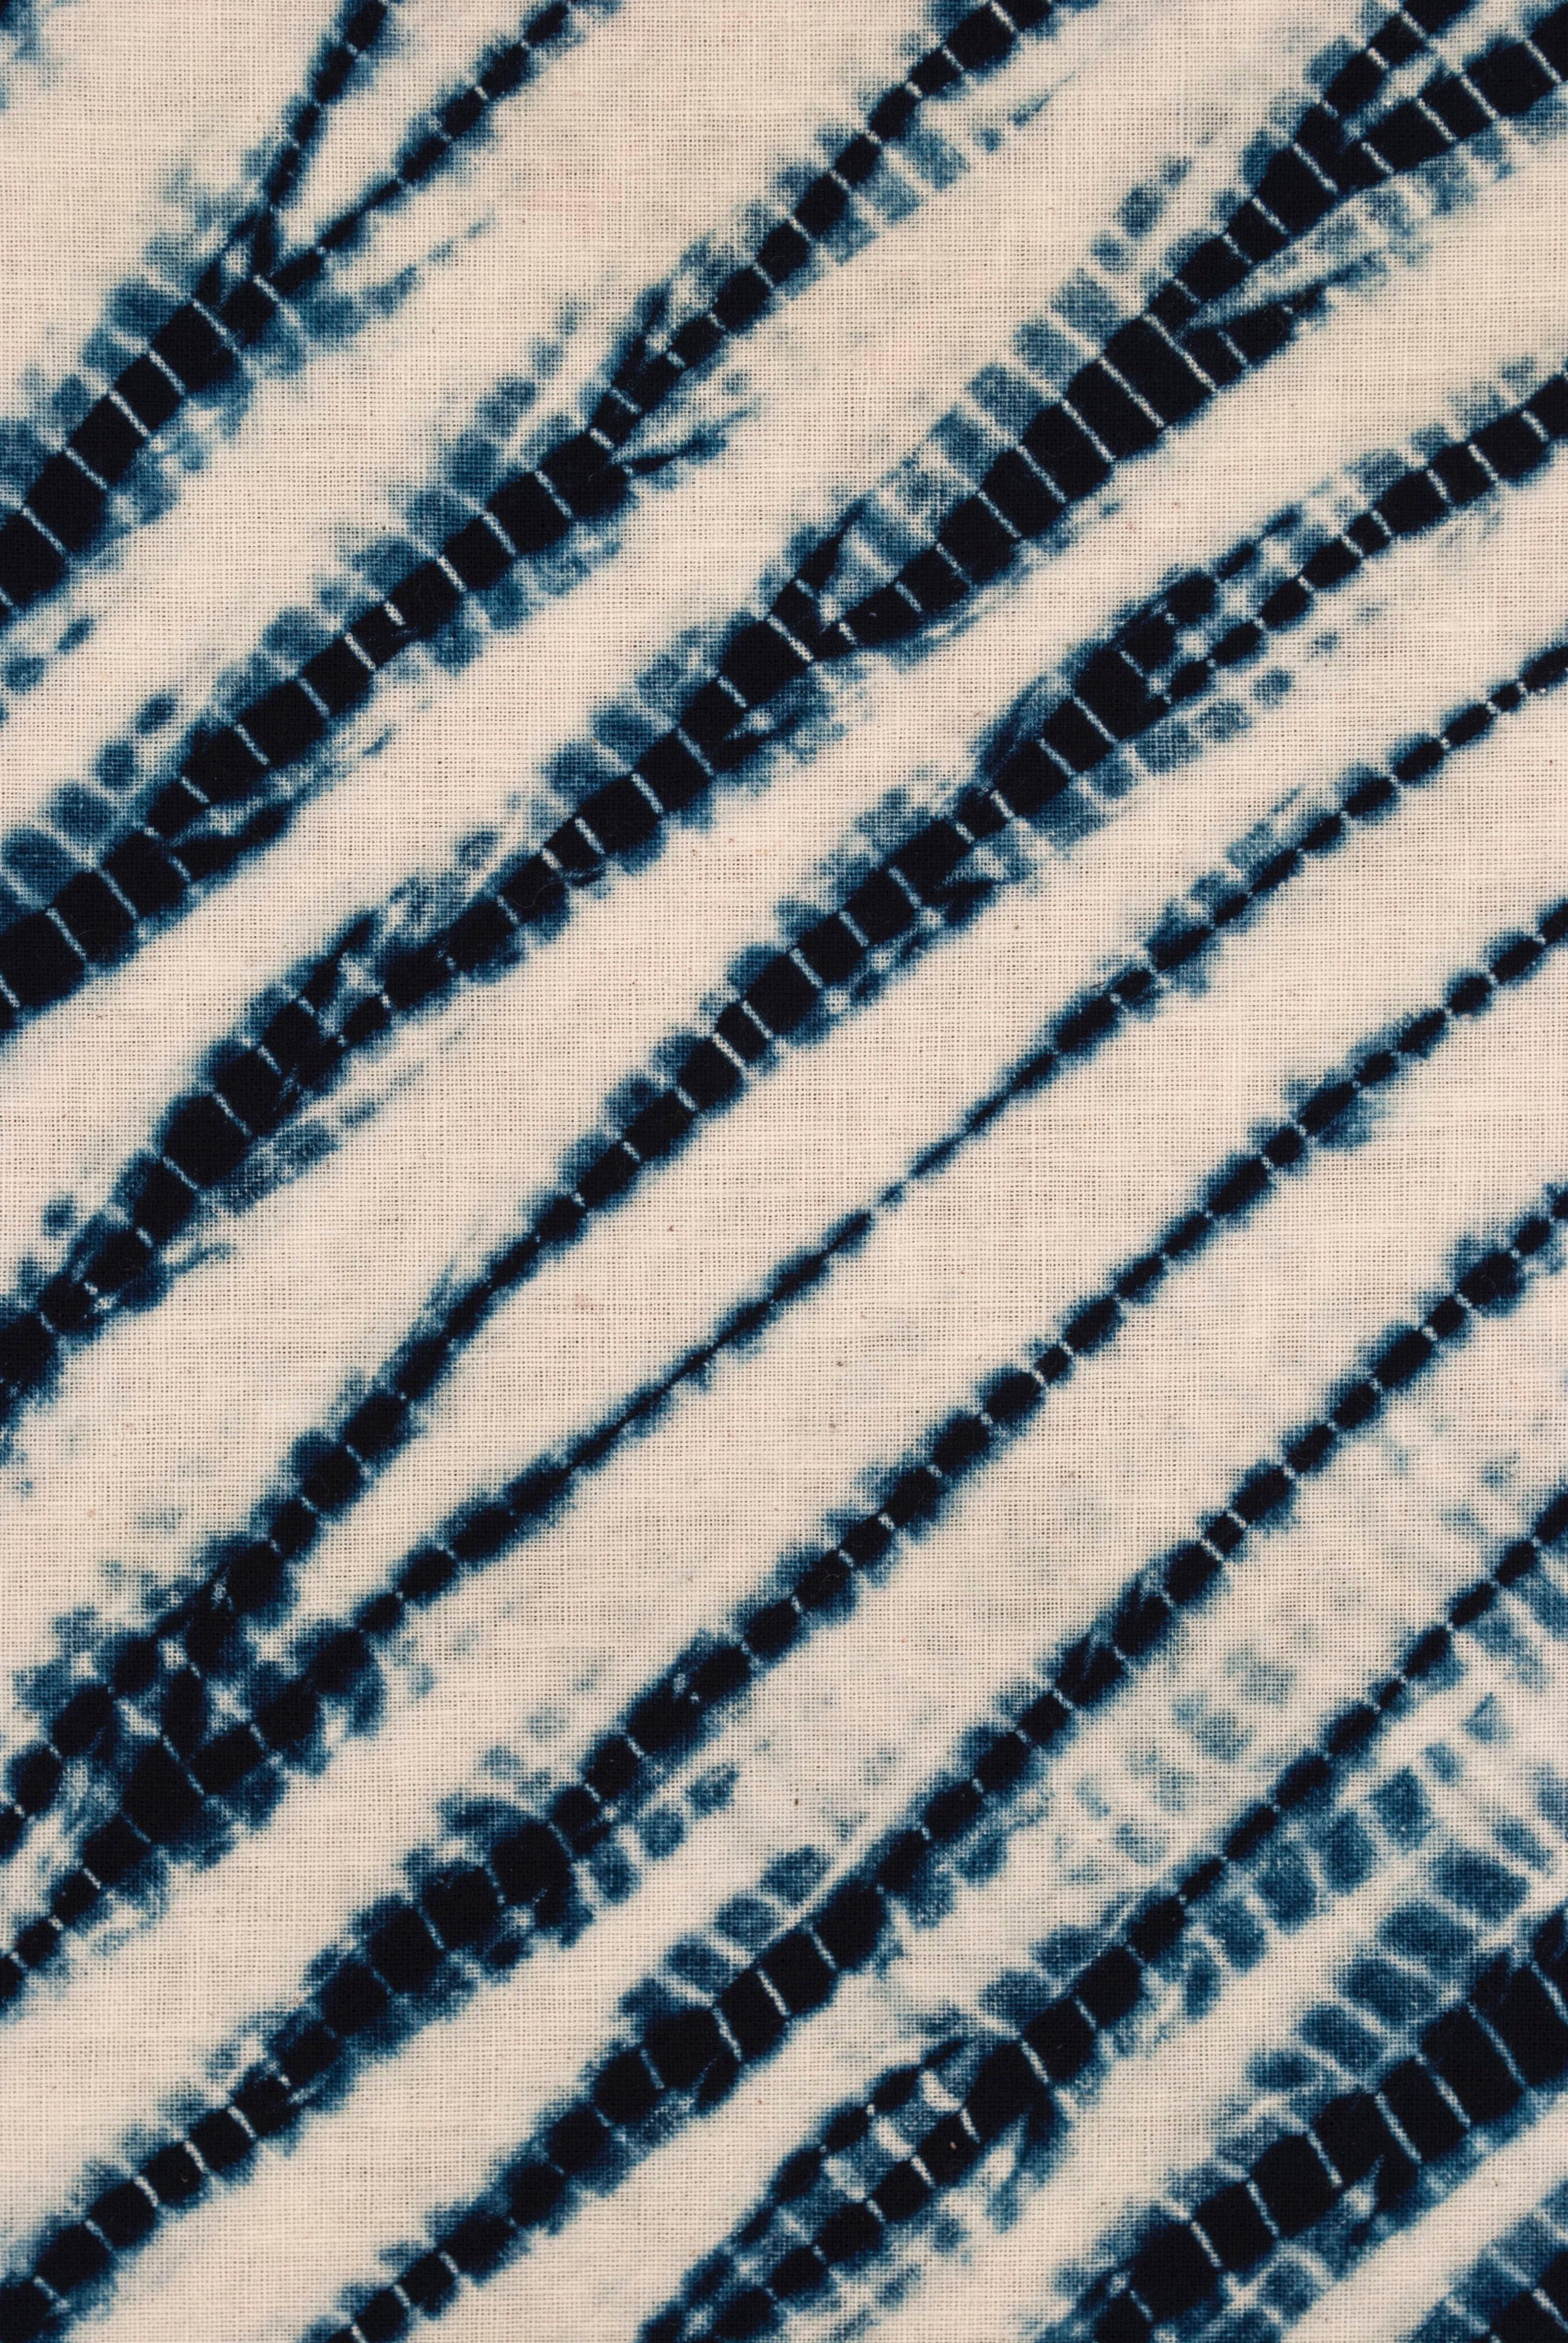 Showa Early 20th Century Japanese Two-Panel Shape-Resist Dyed Textile / Arashi Shibori